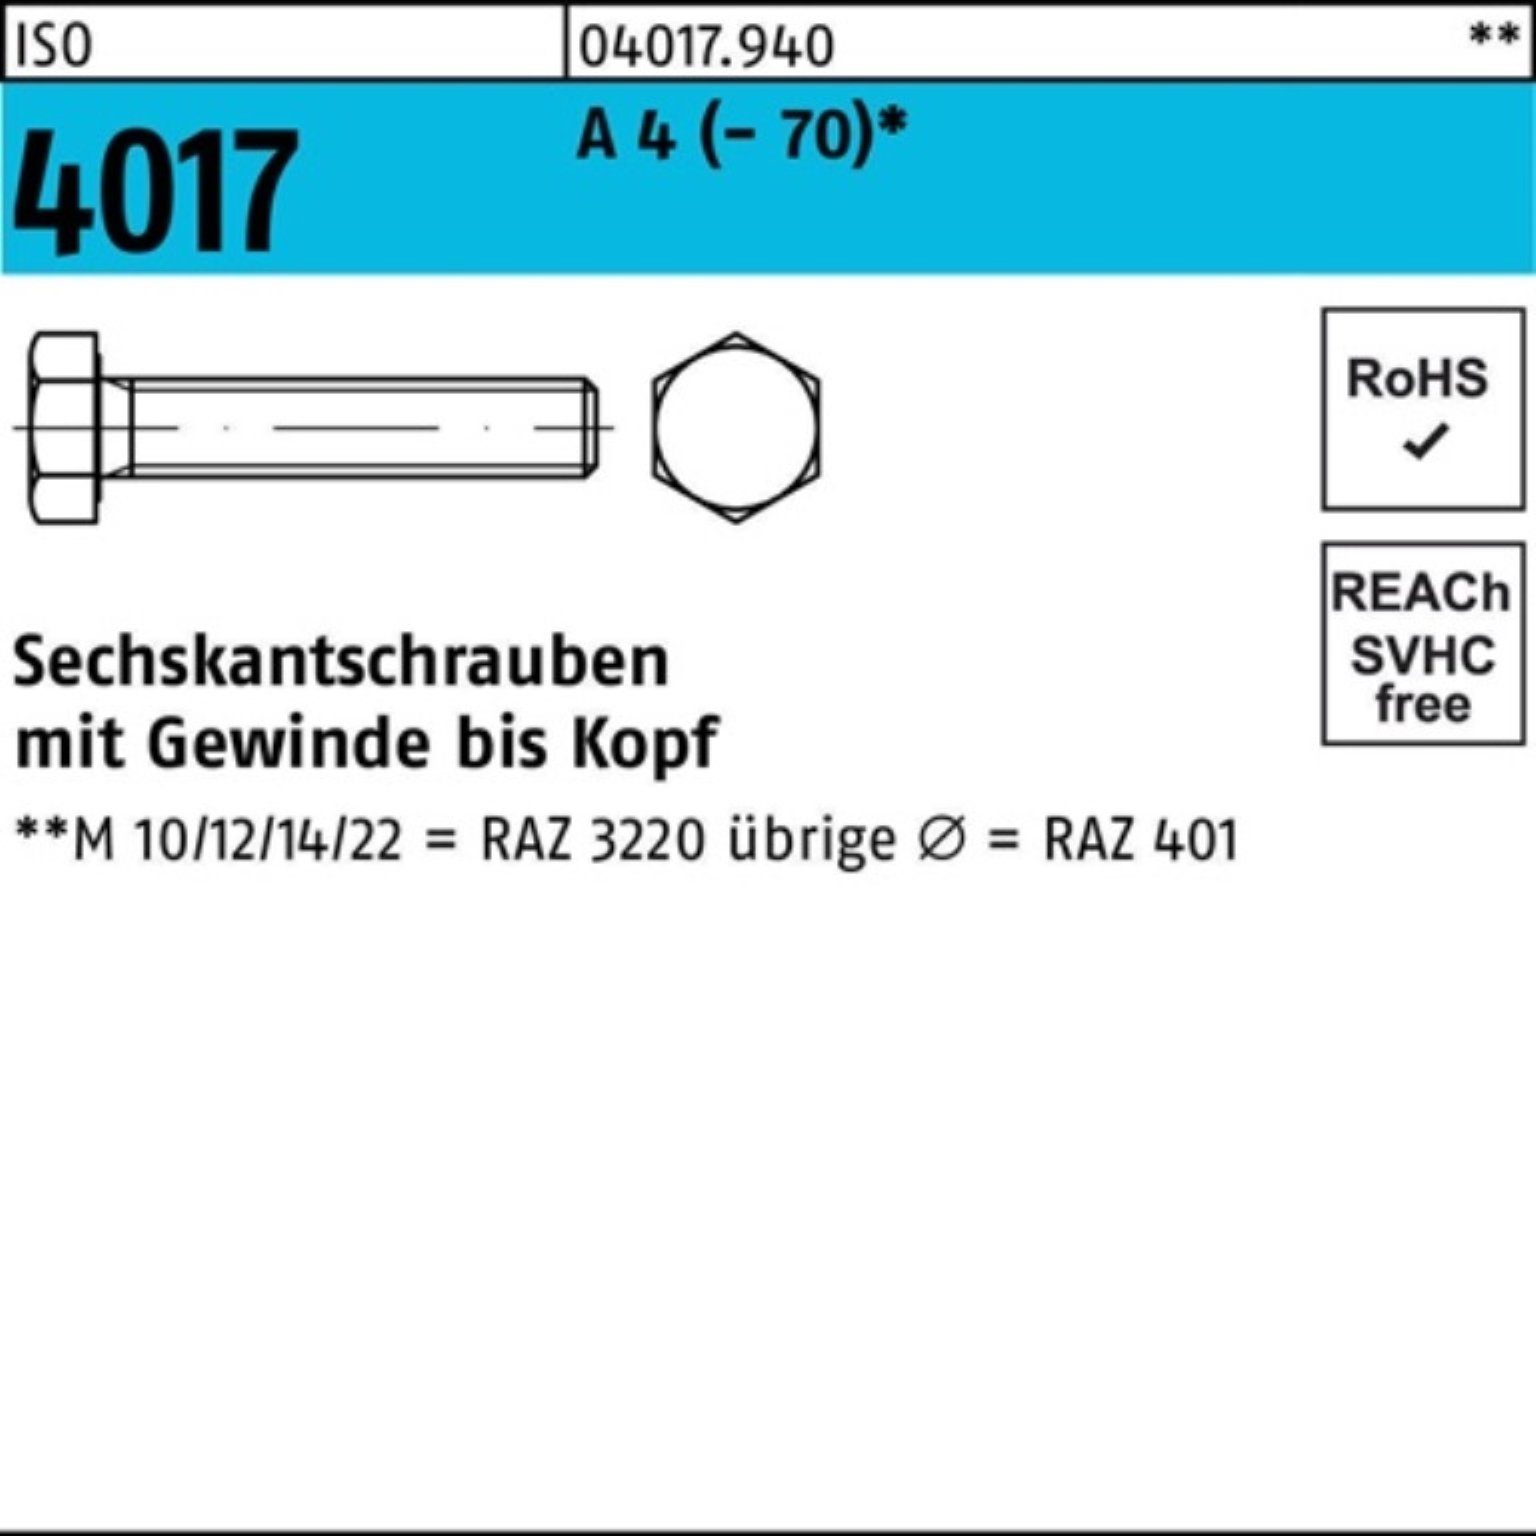 Bufab Sechskantschraube 100er Pack Sechskantschraube ISO VG 150 4017 1 Stück A M30x 4 ISO 401